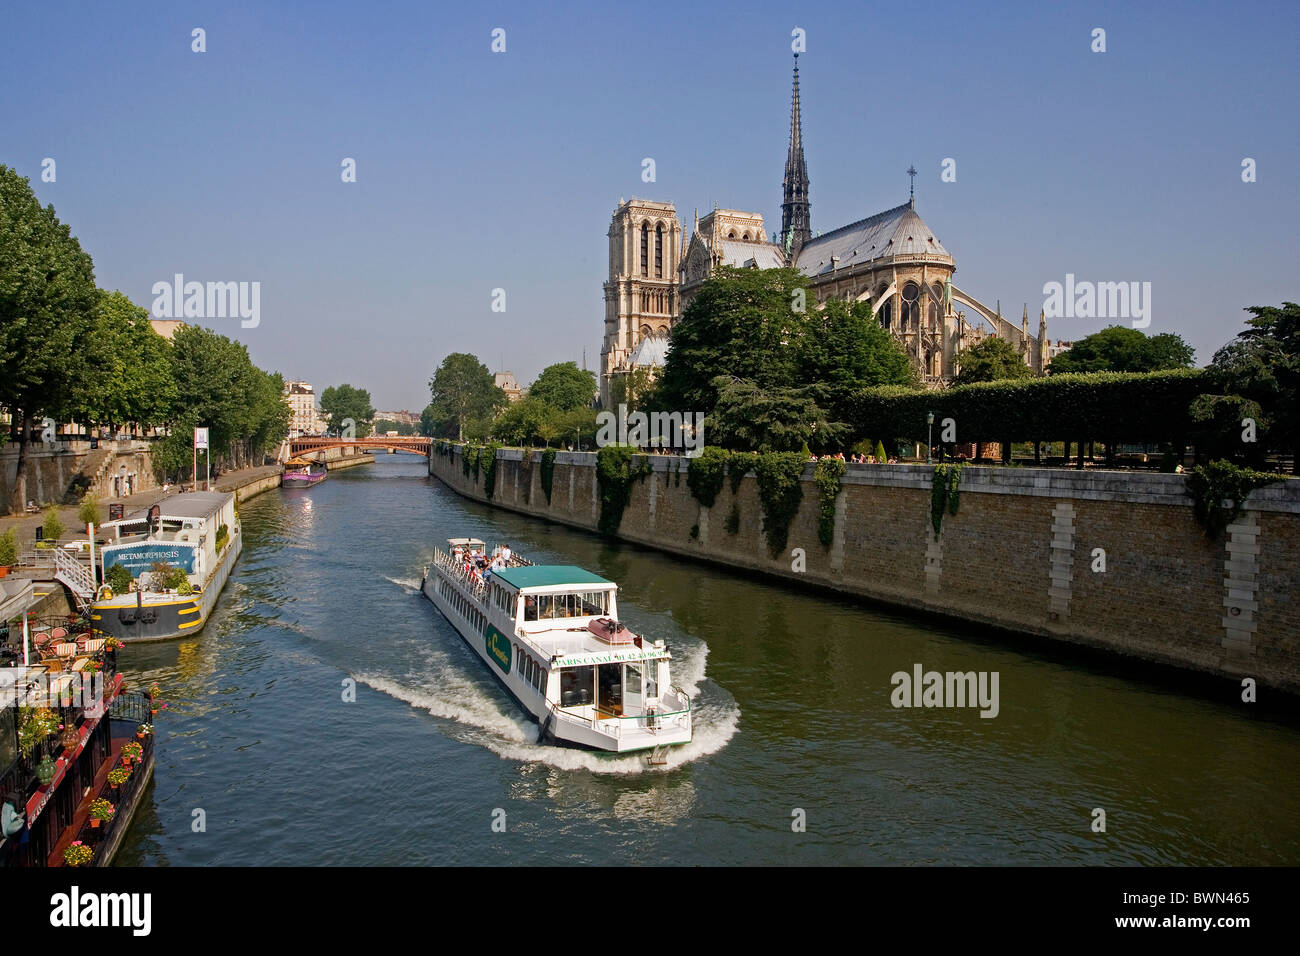 Europa in Paris Stadt Kathedrale Notre-Dame-Kirche Ufer Brücke Boot Schiff Touristen können Besichtigungen Stockfoto